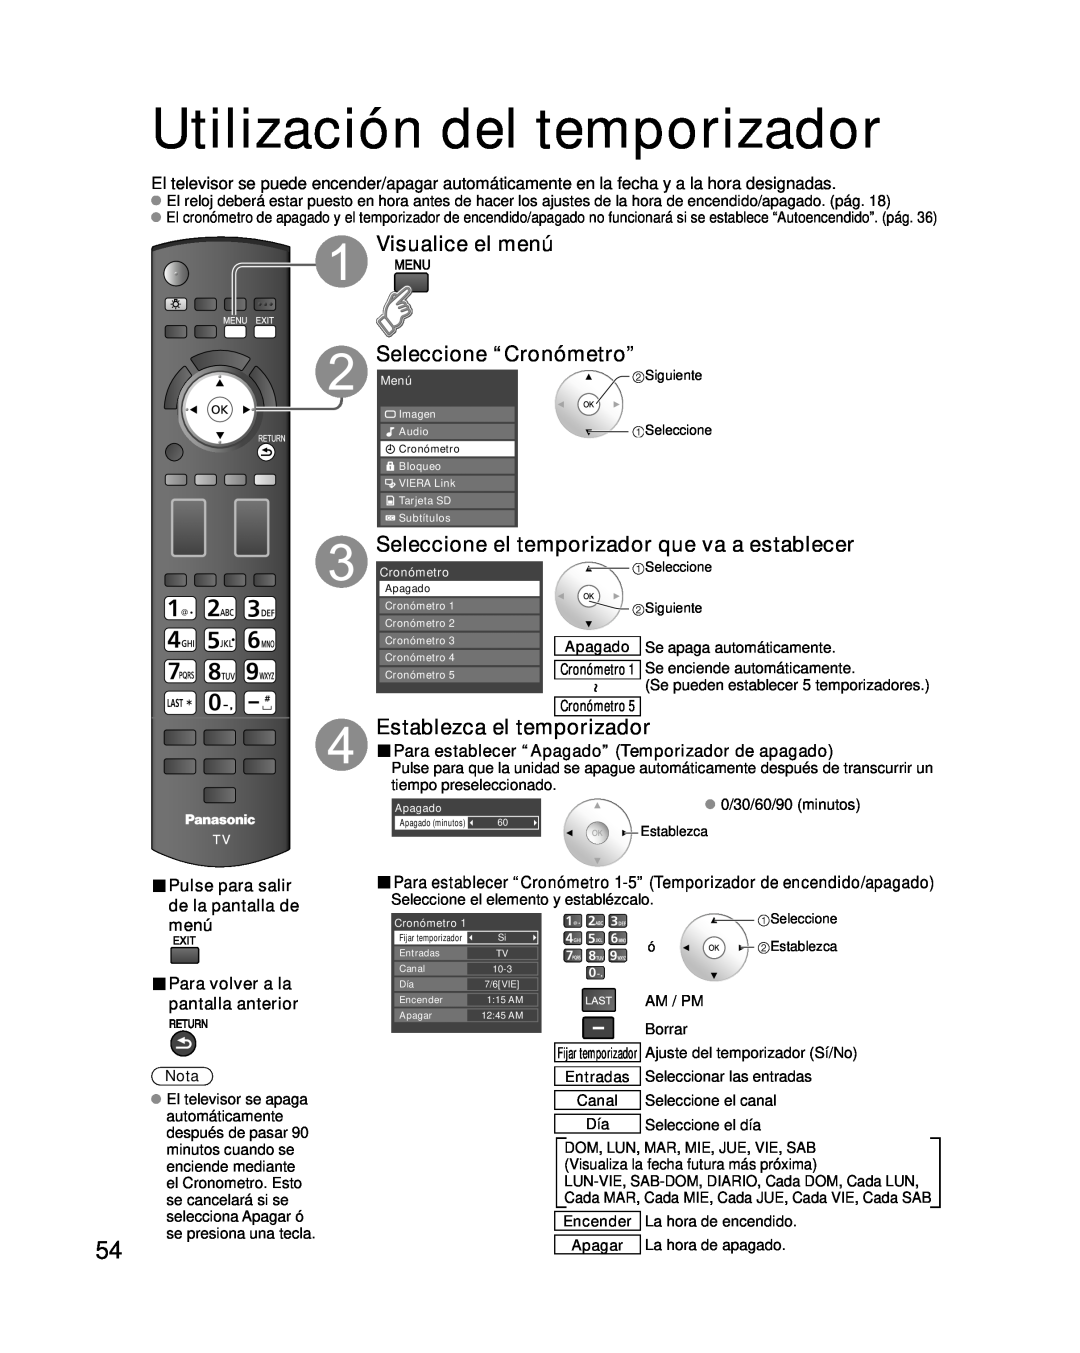 Panasonic TC-P54G10 Utilización del temporizador, Visualice el menú Seleccione “Cronómetro”, Establezca el temporizador 